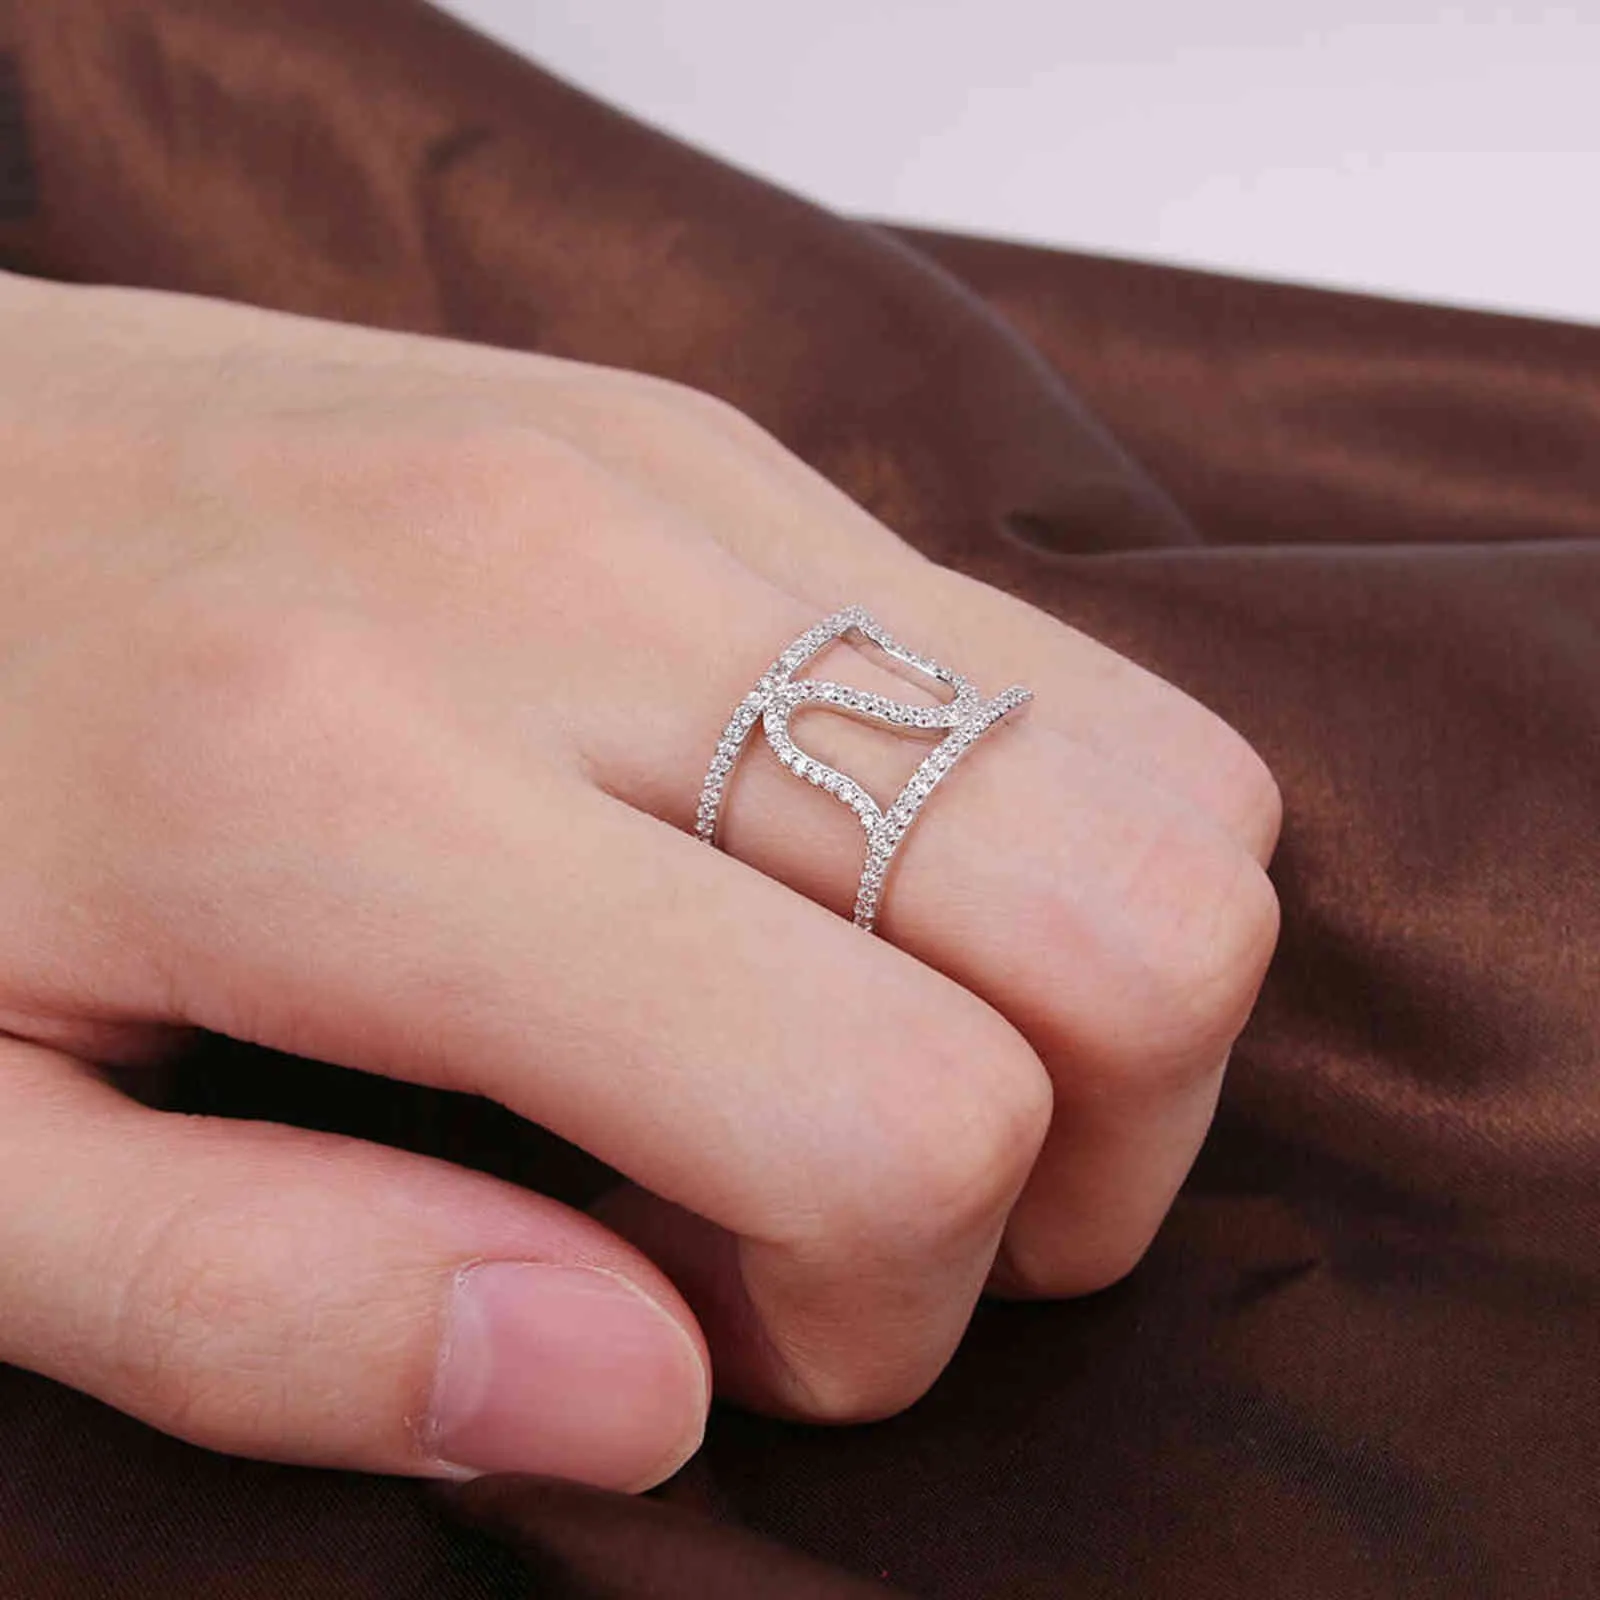 Zemo Real 925 Sliver Pierścienie Kobiety Wedding Moda Kryształ CZ Pierścień Nieregularne Pierścienie Kształt Specjalne Pierścionki Design Girls Biżuteria Prezent G1125